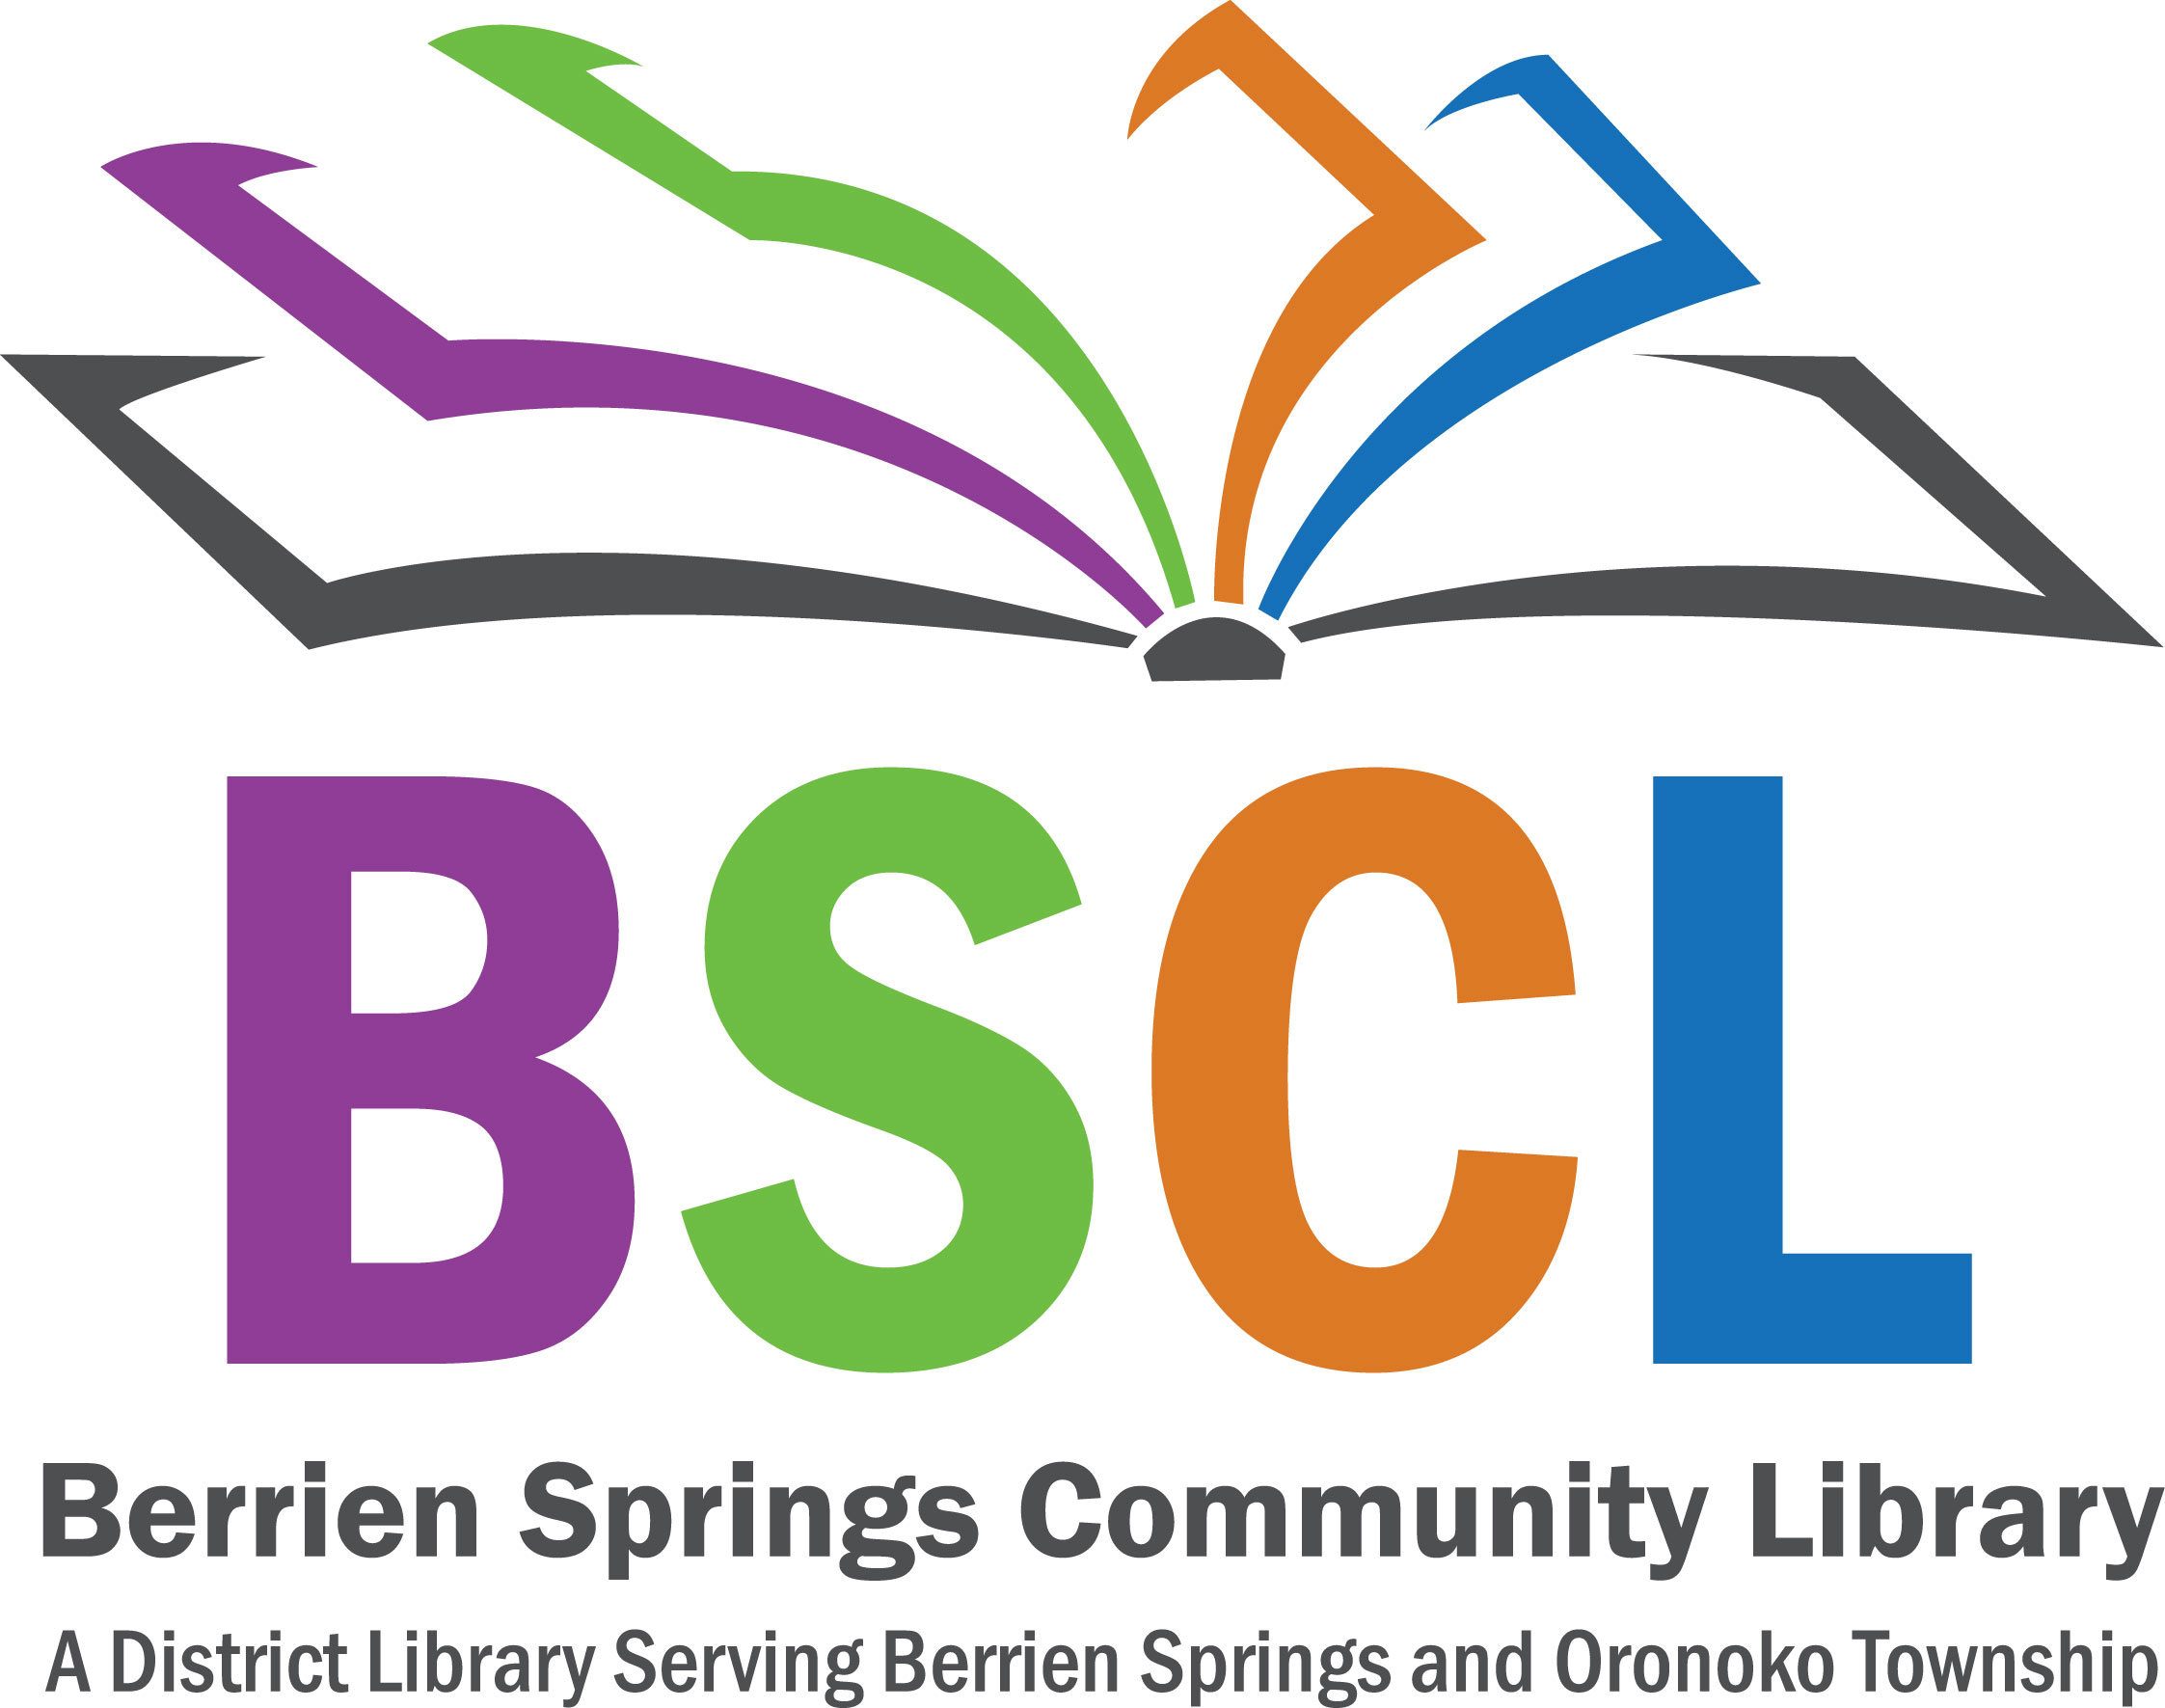  Library  Logos 